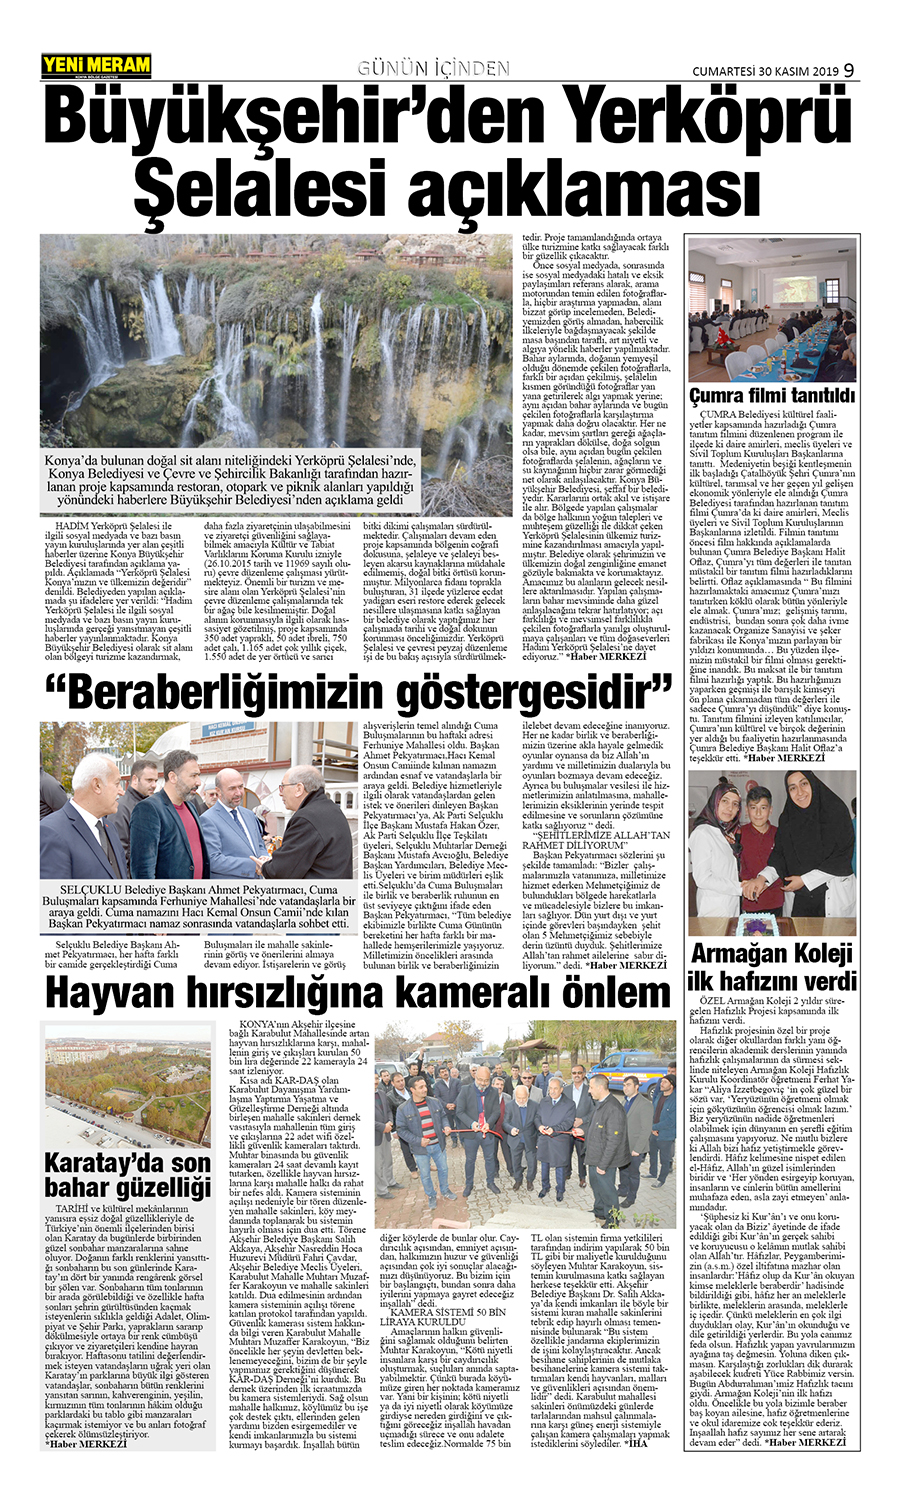 30 Kasım 2019 Yeni Meram Gazetesi